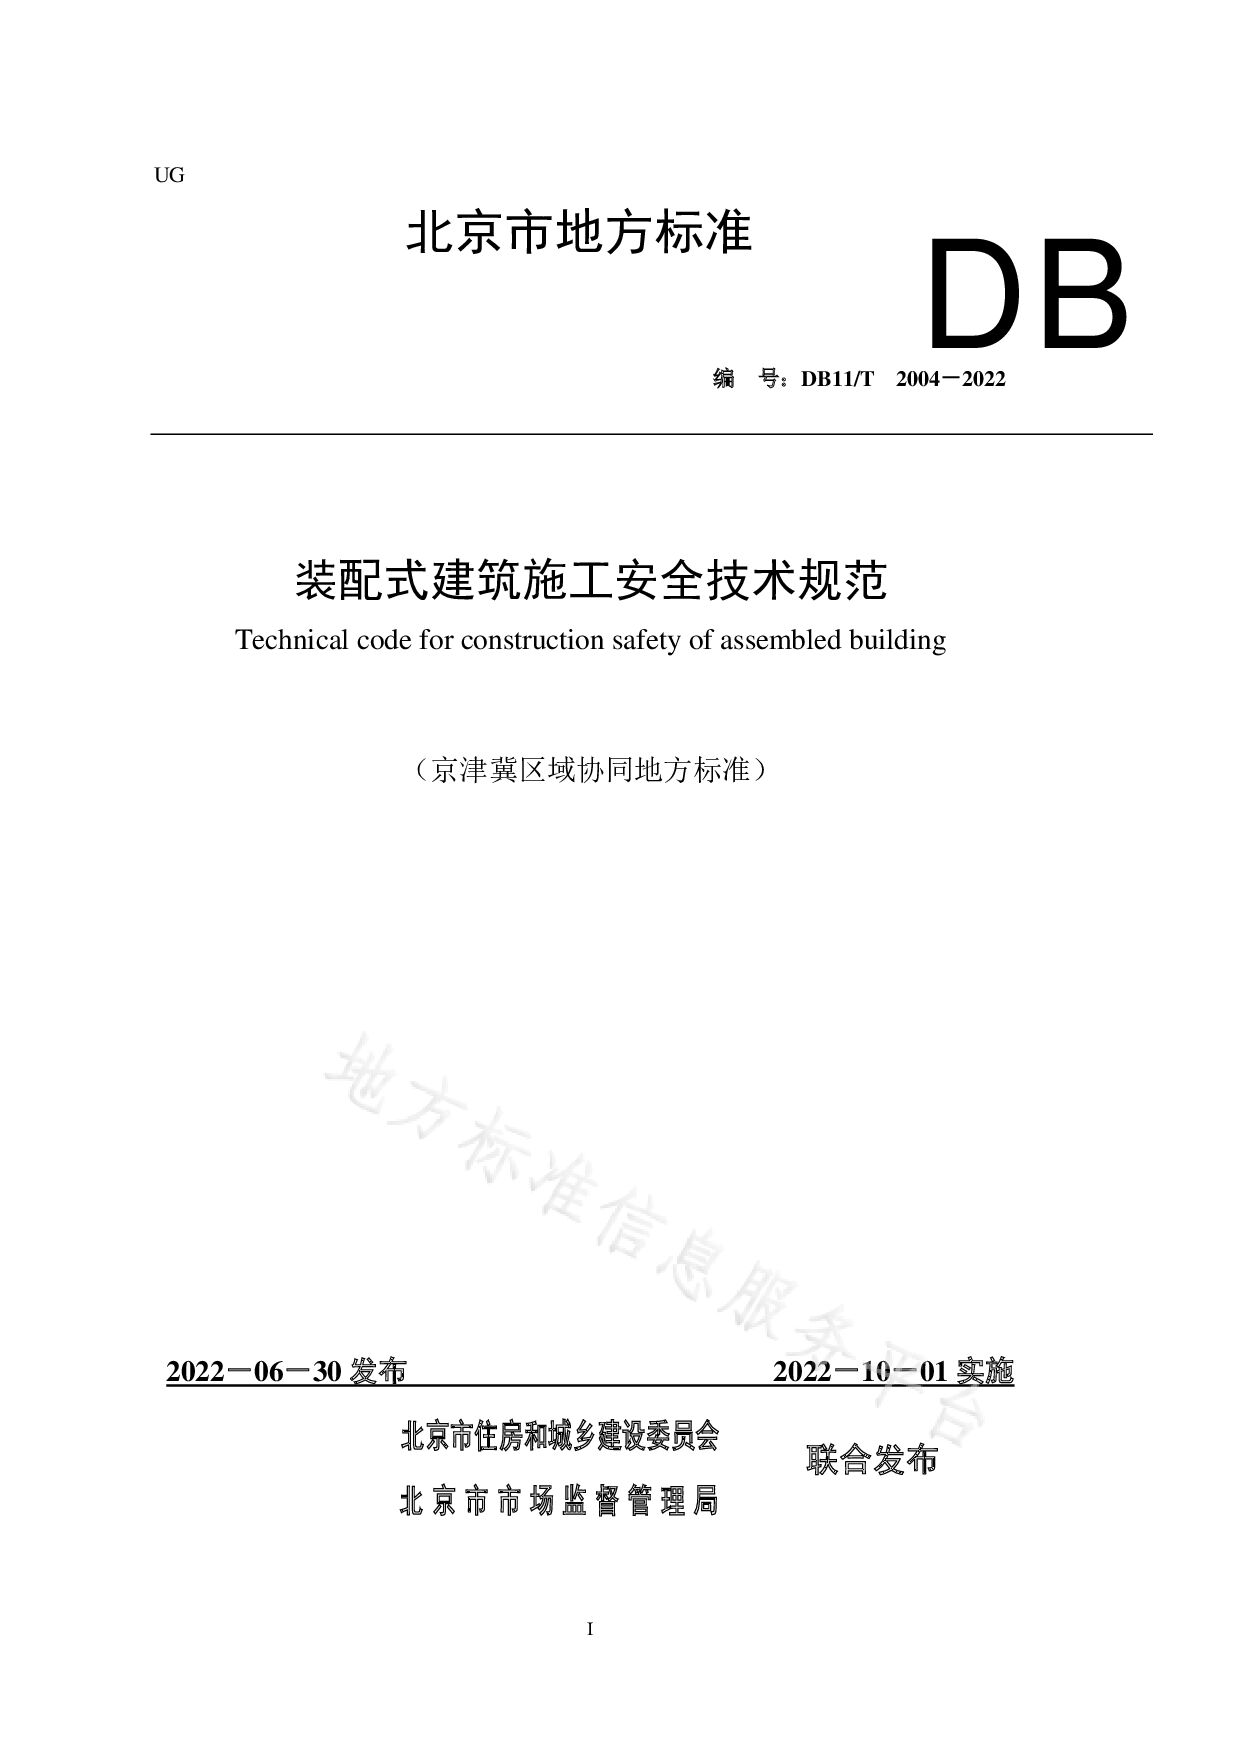 DB11/T 2004-2022封面图